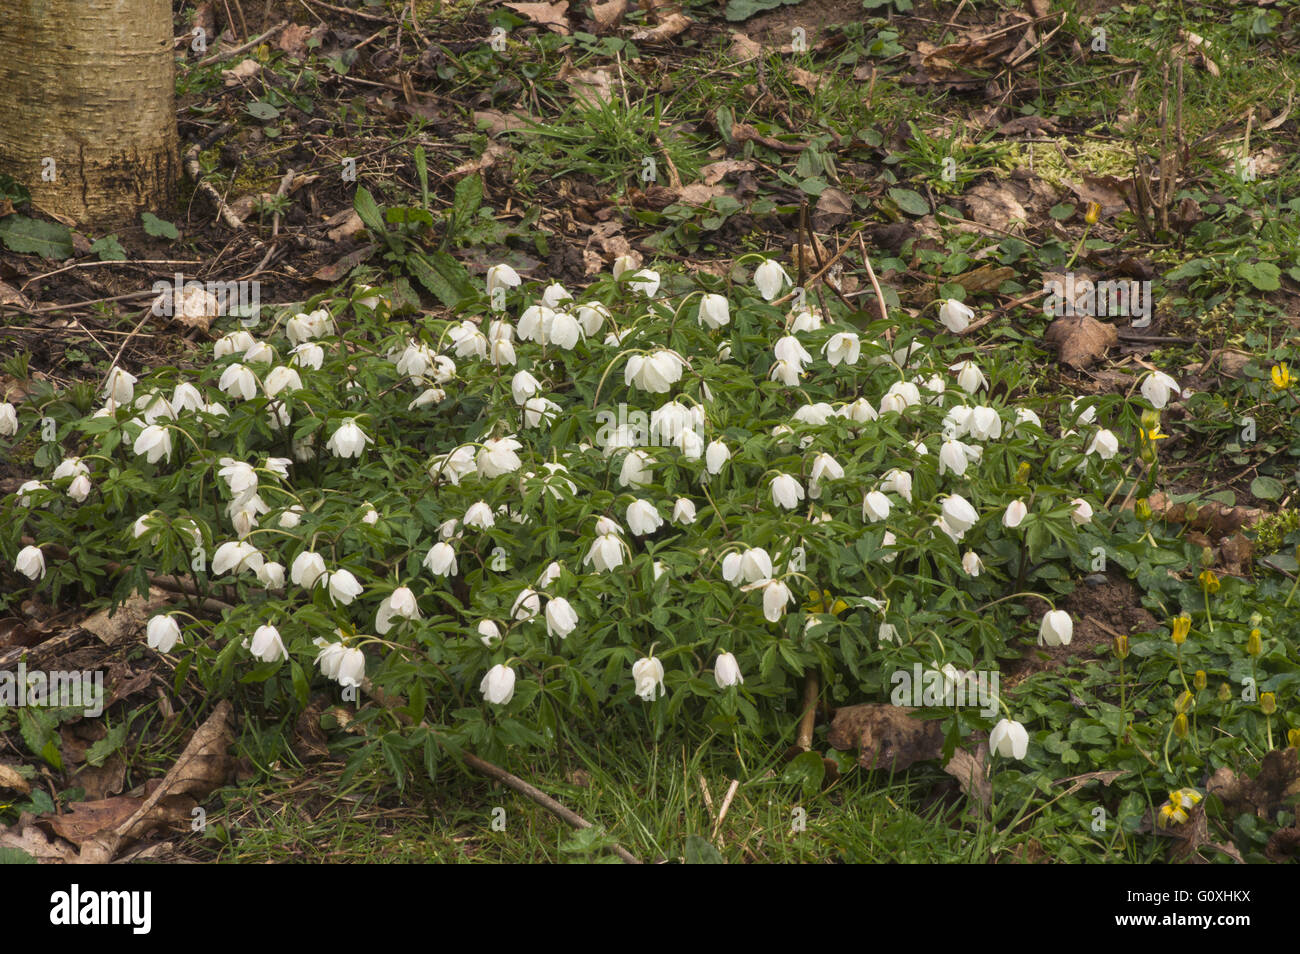 Legno Anemone, un comune agli inizi della primavera fiore di bosco Foto Stock